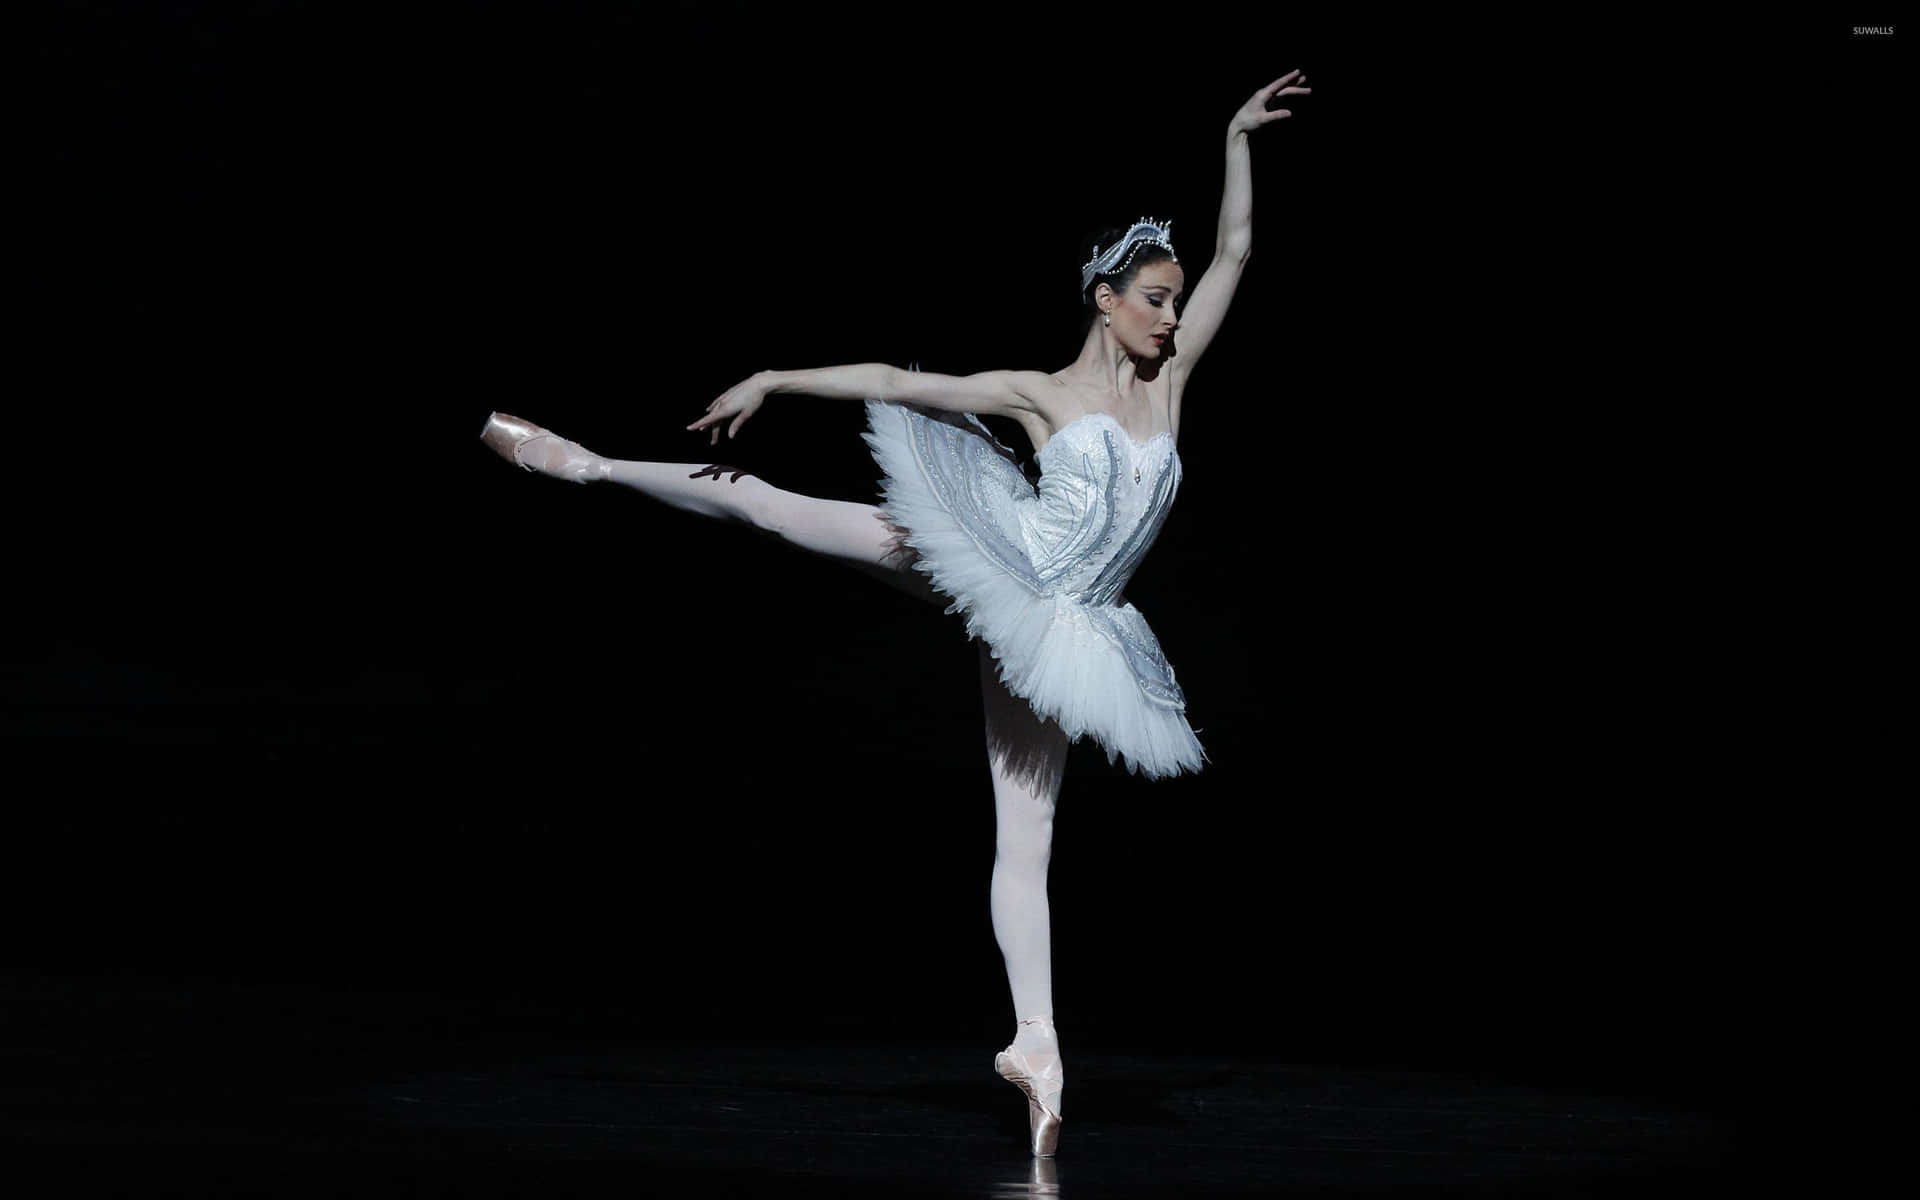 Unabailarina De Ballet Femenina Con Tutú Blanco Y Plumas Blancas Fondo de pantalla